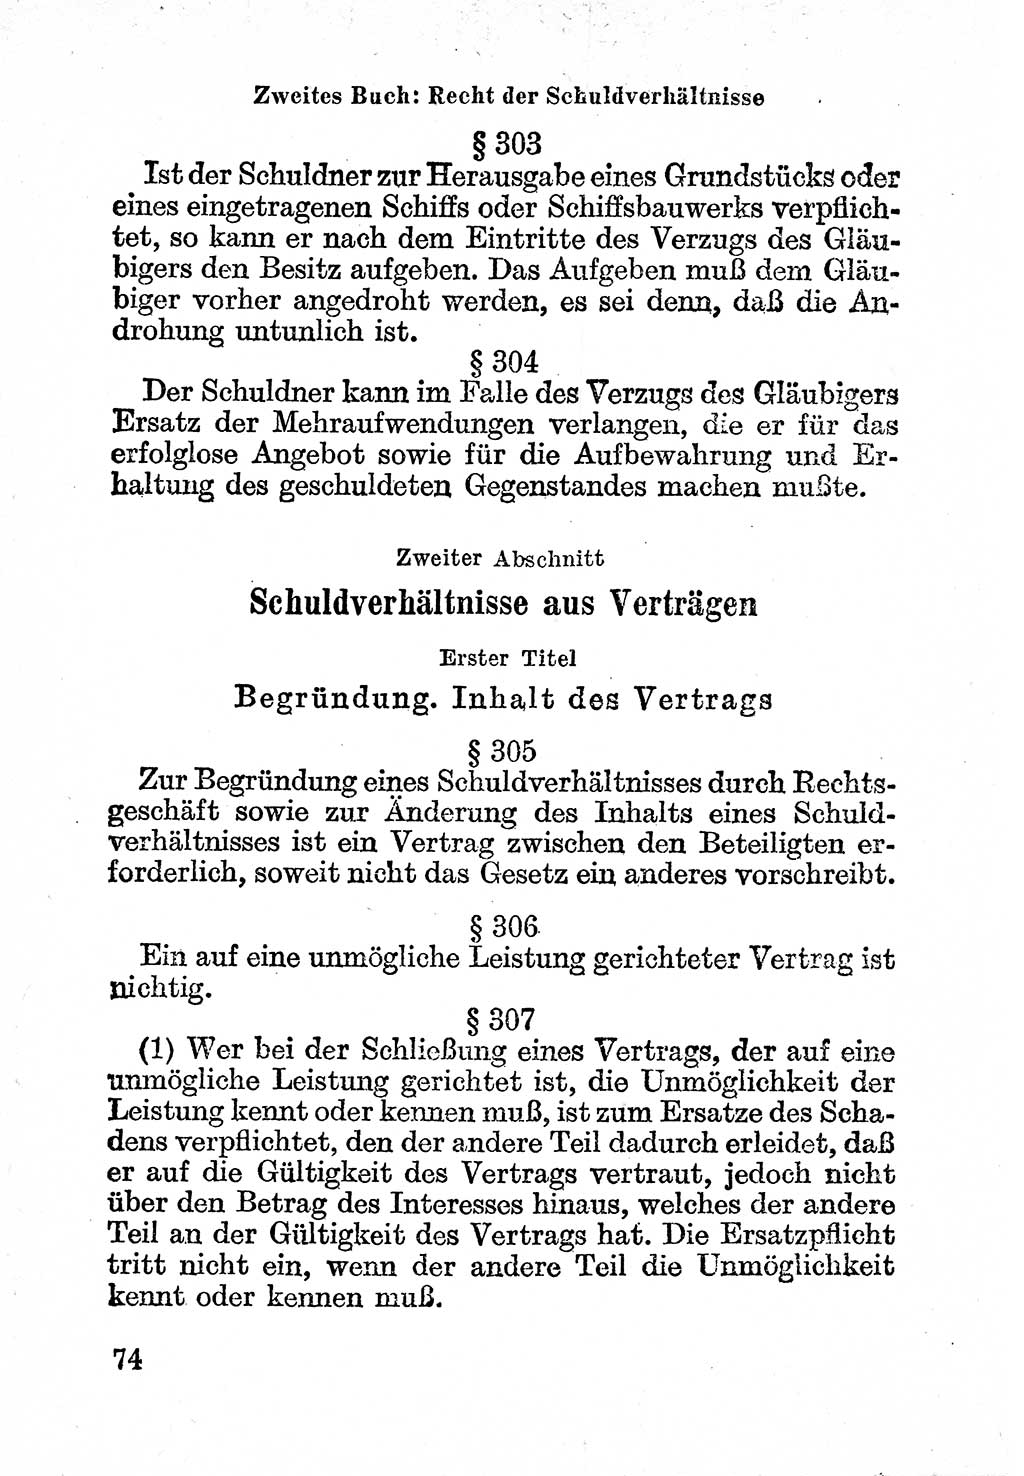 Bürgerliches Gesetzbuch (BGB) nebst wichtigen Nebengesetzen [Deutsche Demokratische Republik (DDR)] 1956, Seite 74 (BGB Nebenges. DDR 1956, S. 74)